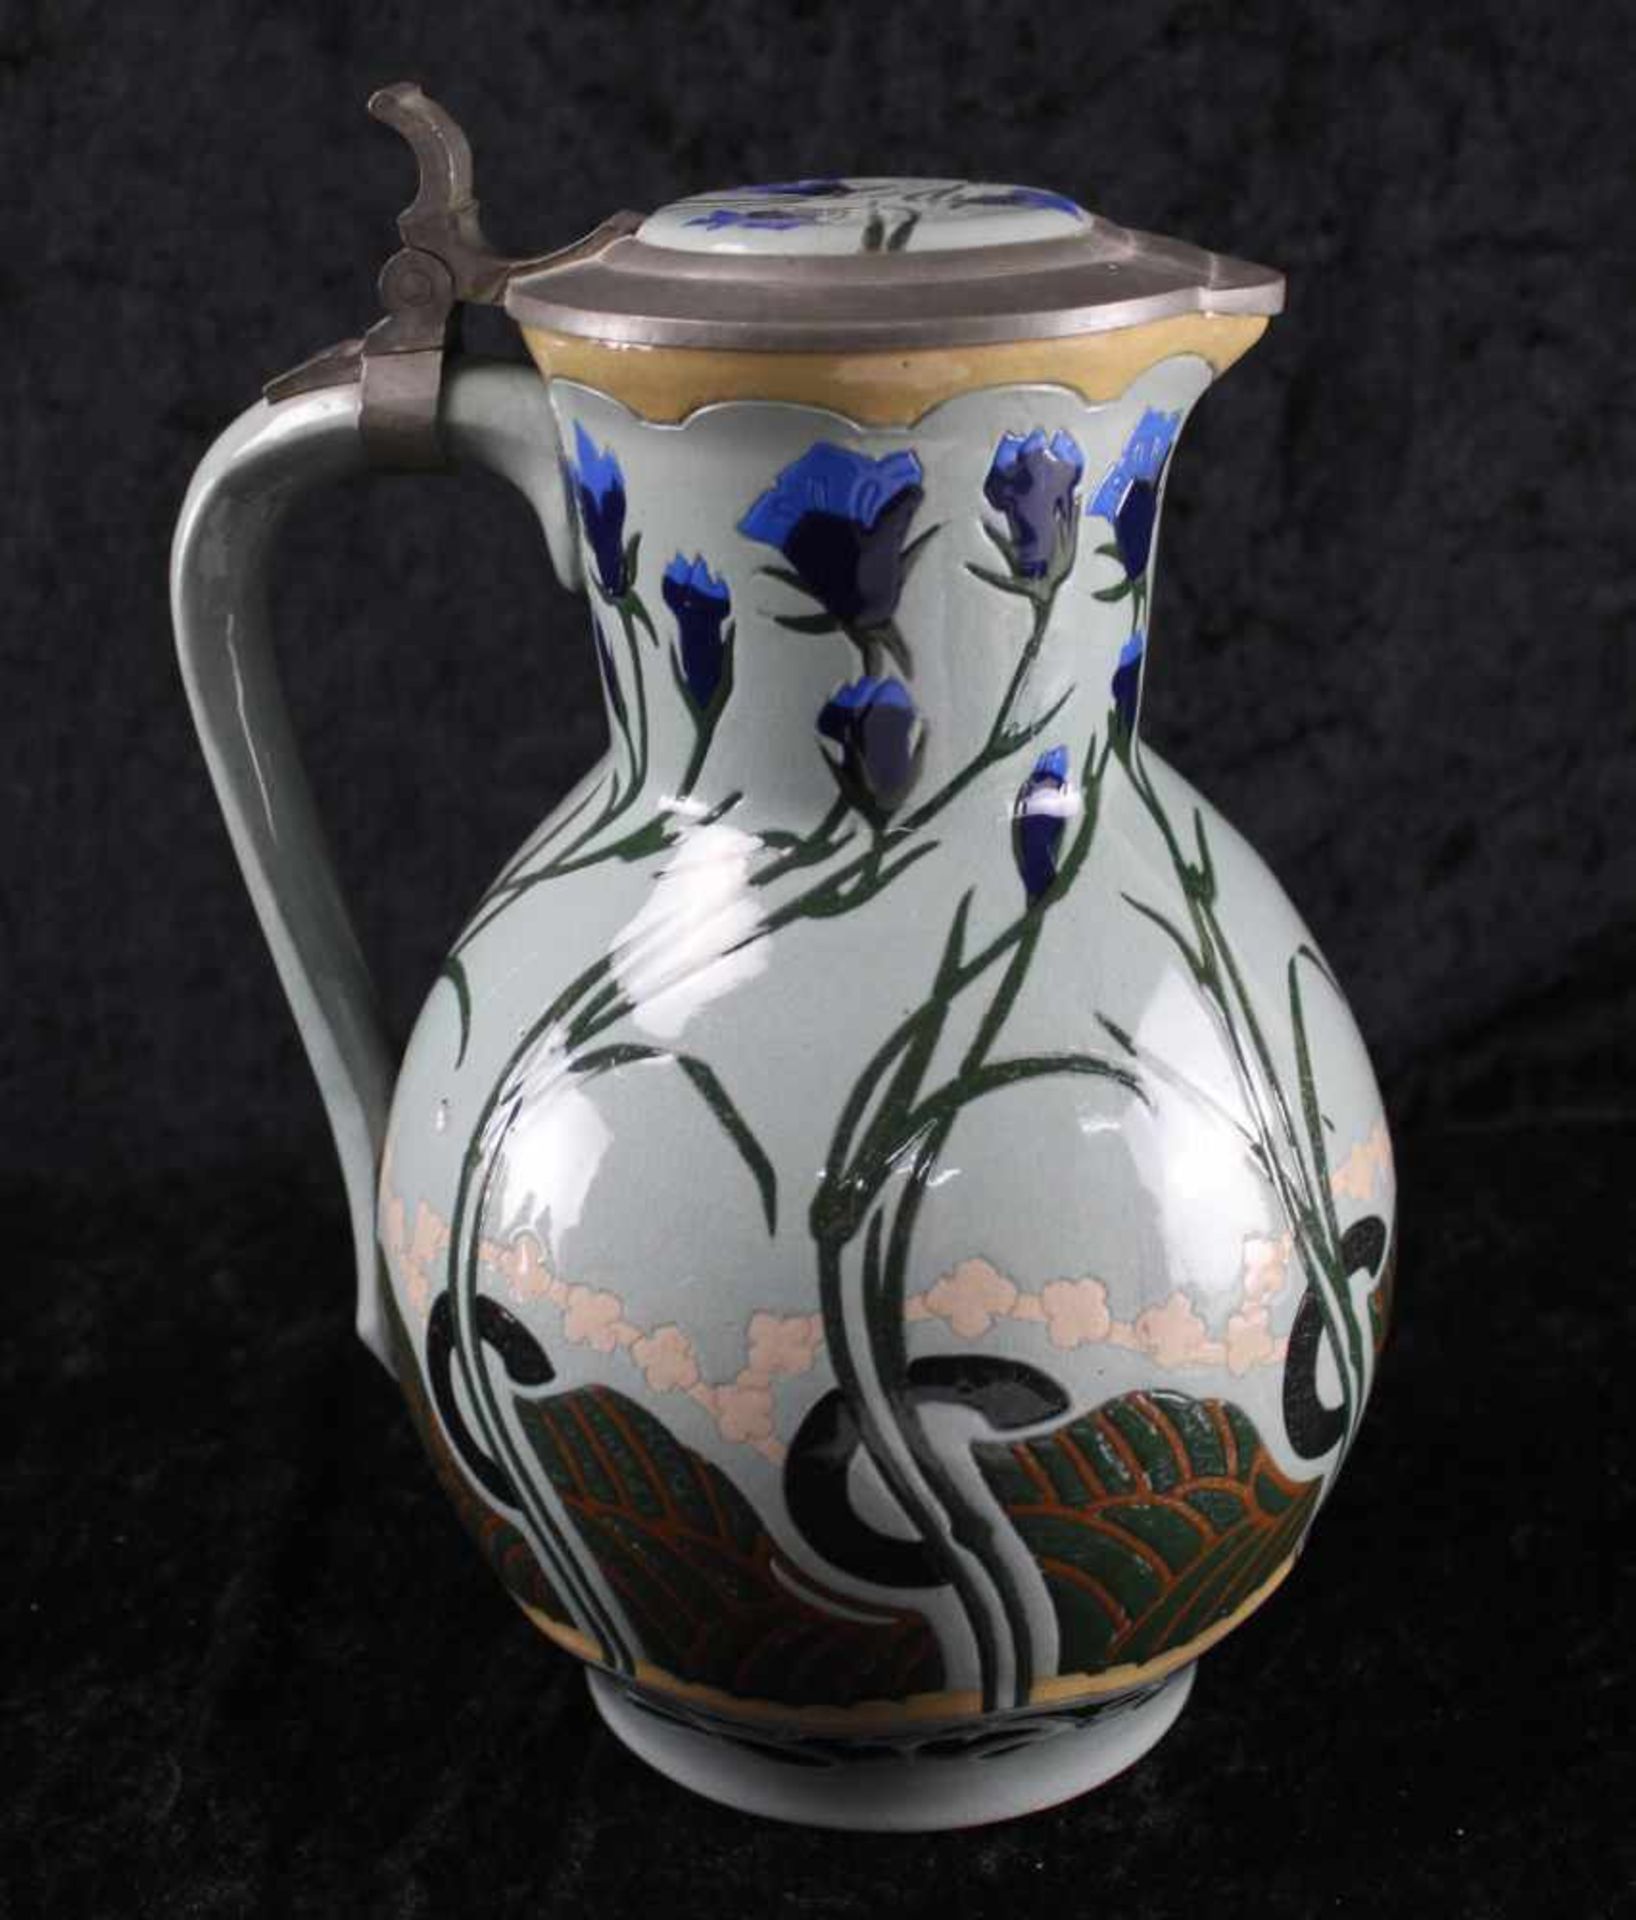 Flämische Keramik, Vlaams Aardewerk, Weinkrug um 1920, Zinndeckel